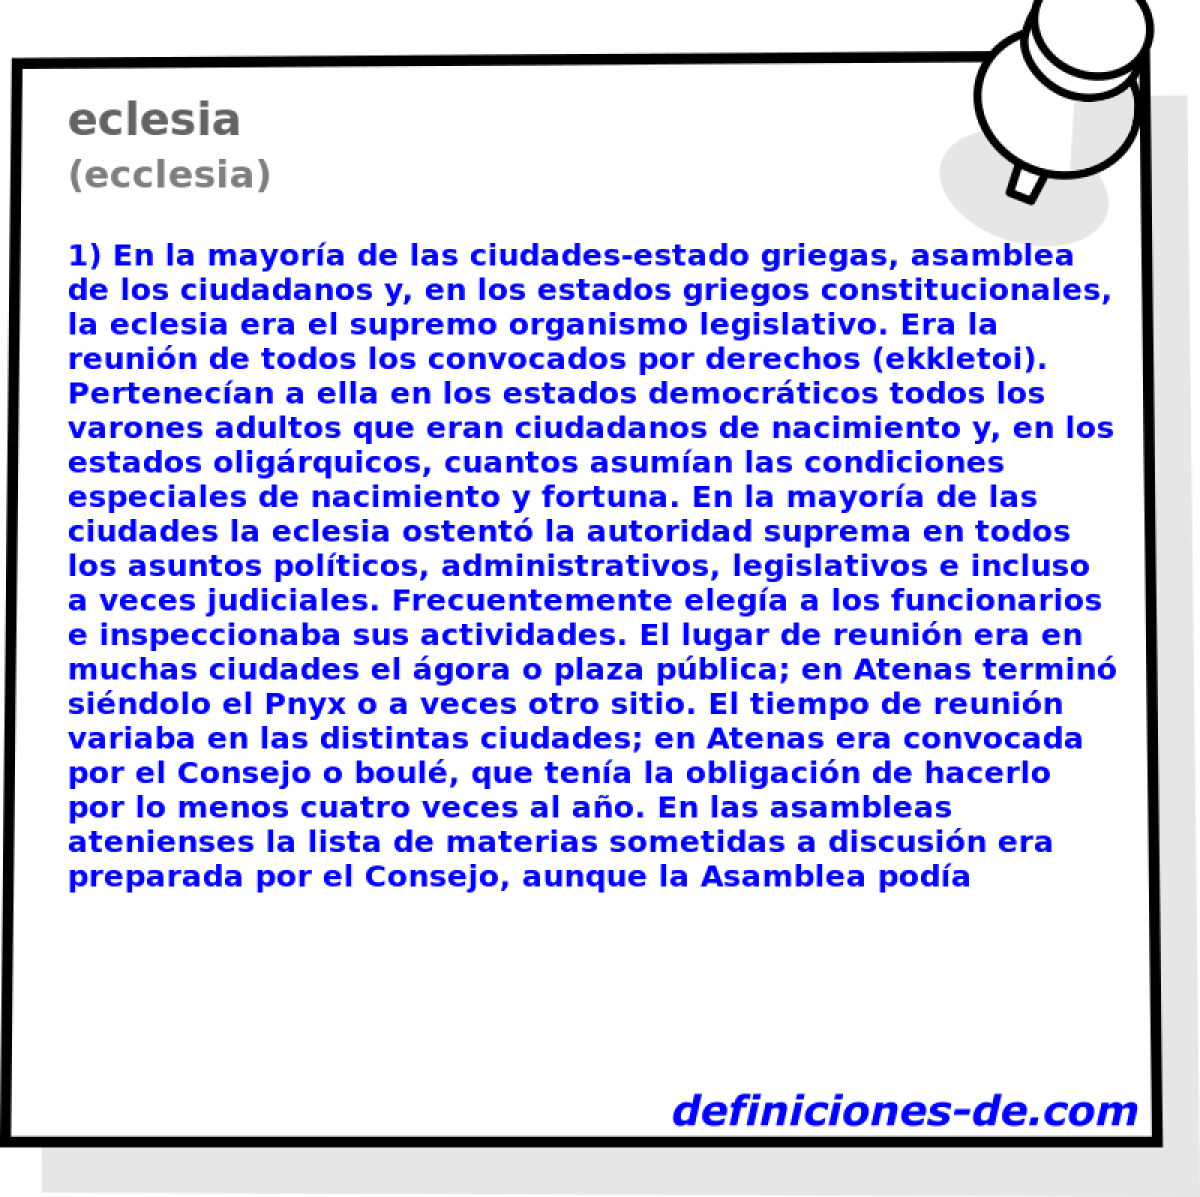 eclesia (ecclesia)